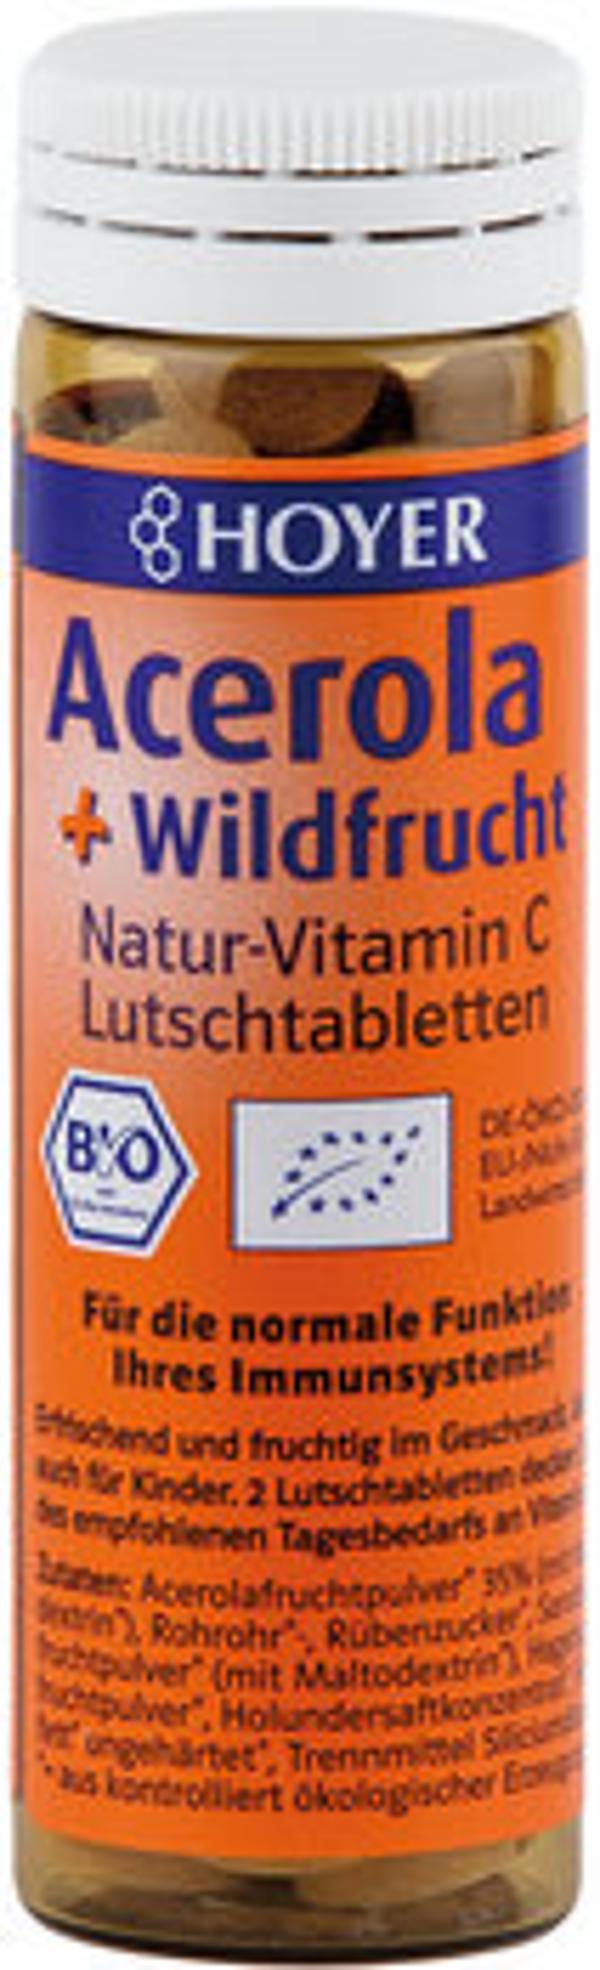 Produktfoto zu Acerola & Wildfrucht-Lutschtabletten